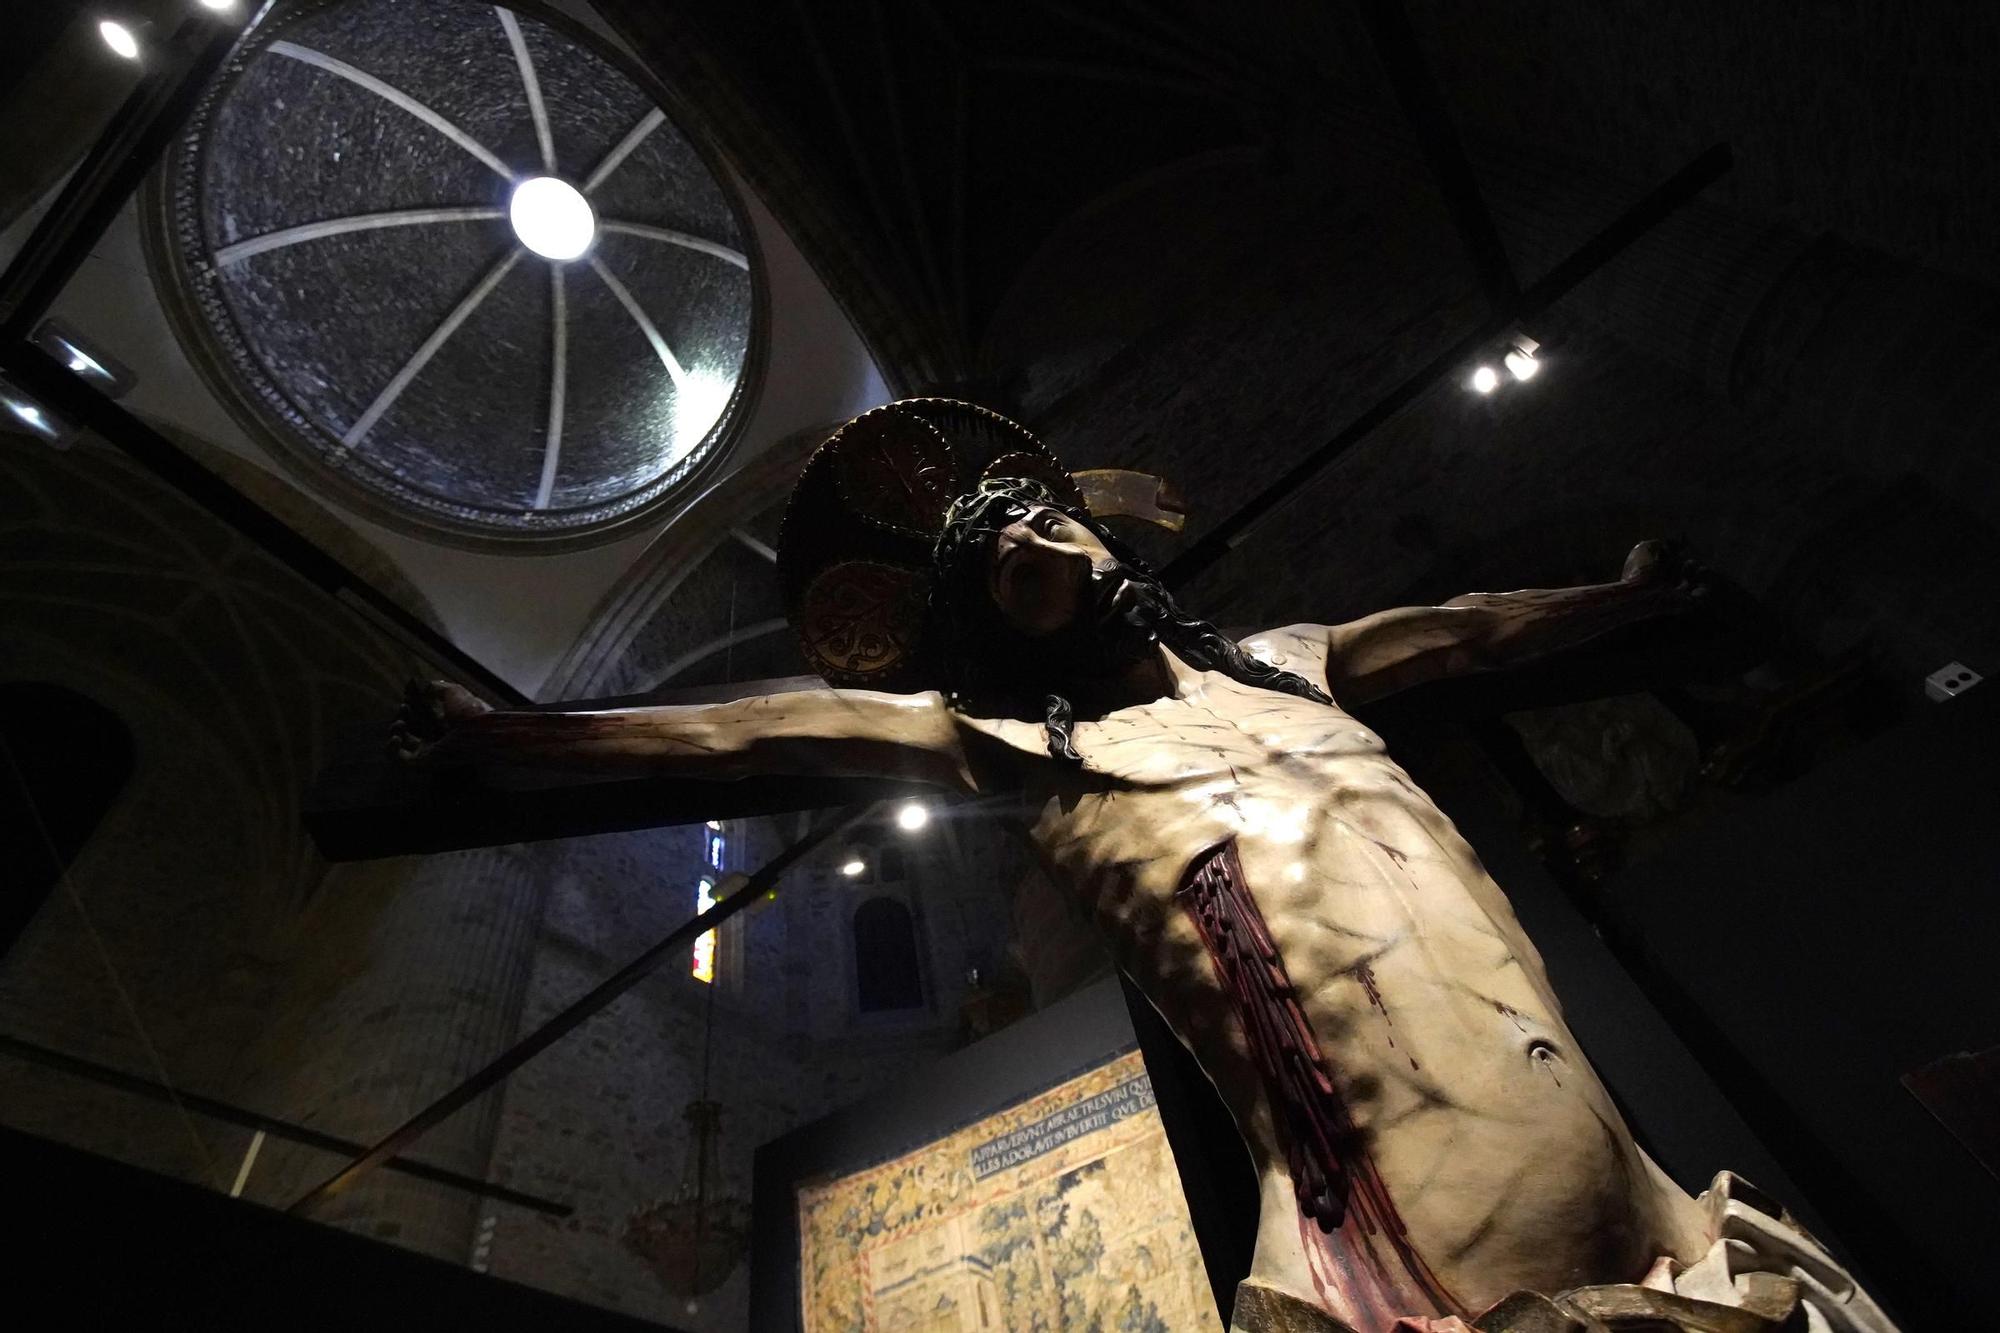 GALERÍA: "Hospitalitas" desembarca en Villafranca del Bierzo con una selección de lo mejor del arte religioso